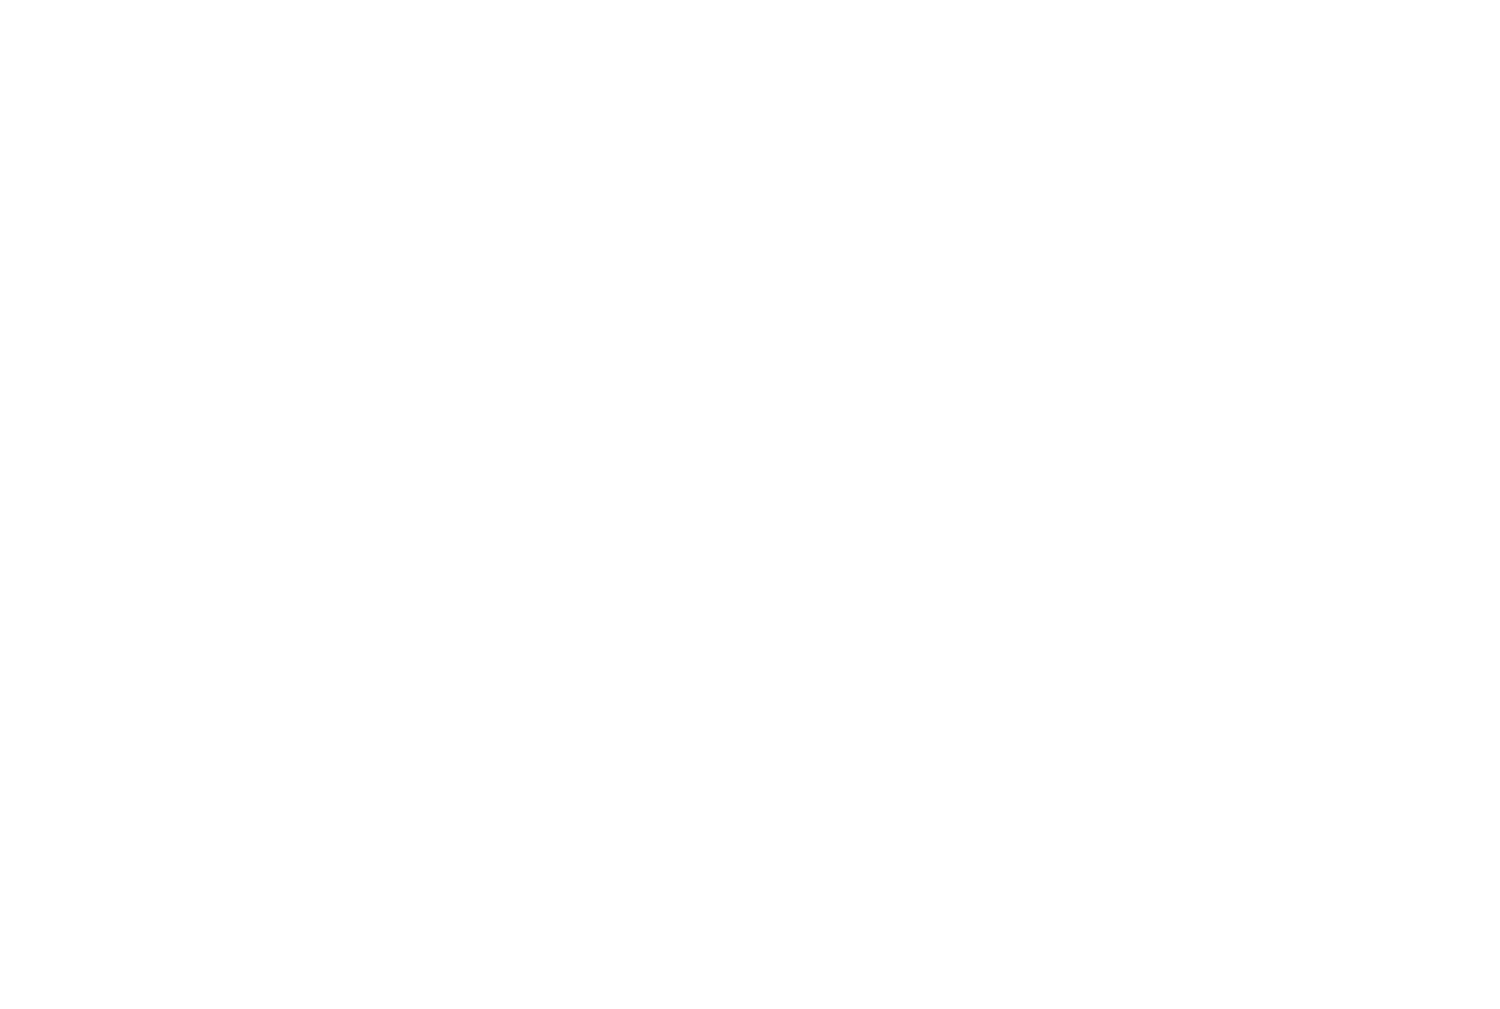 Feast & Fallow